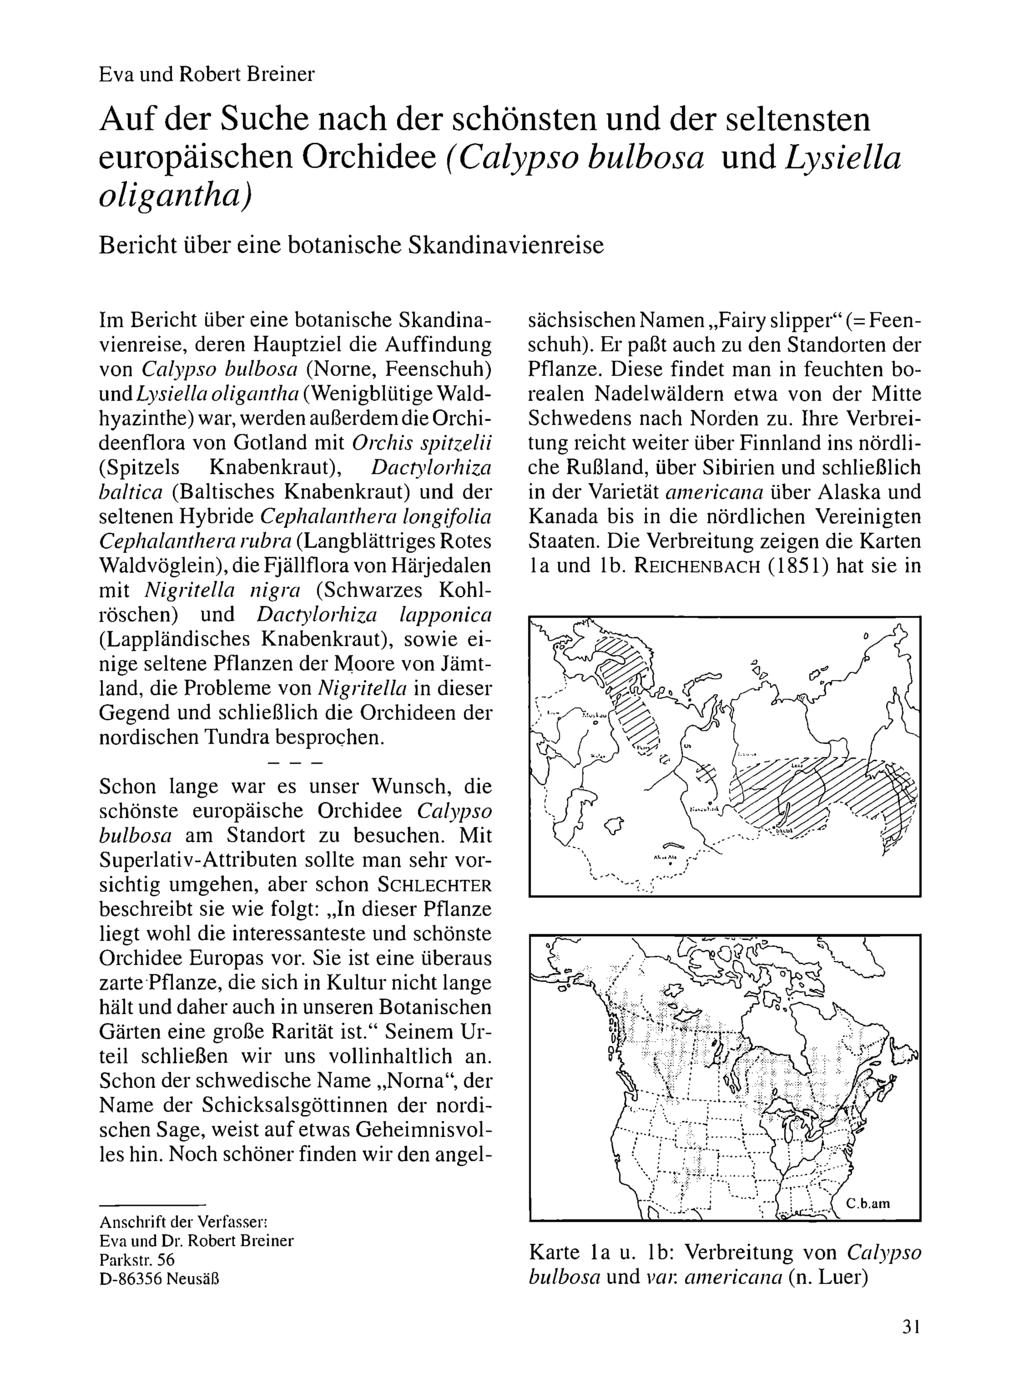 Eva und Robert Breiner Naturwissenschaftlicher Verein für Schwaben, download unter www.biologiezentrum.